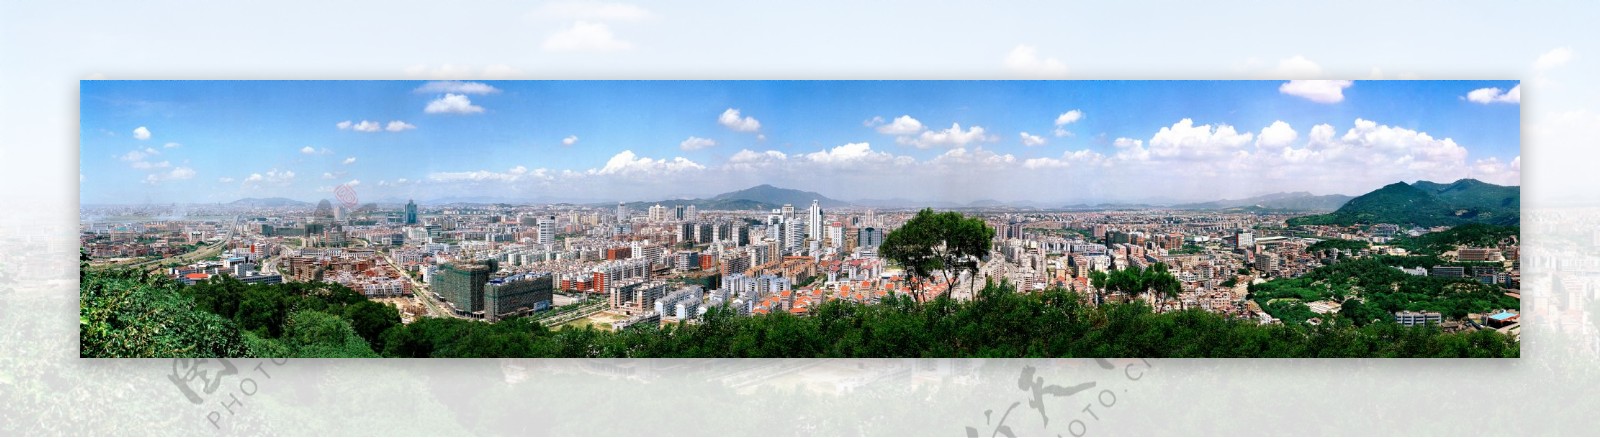 城市全景图图片